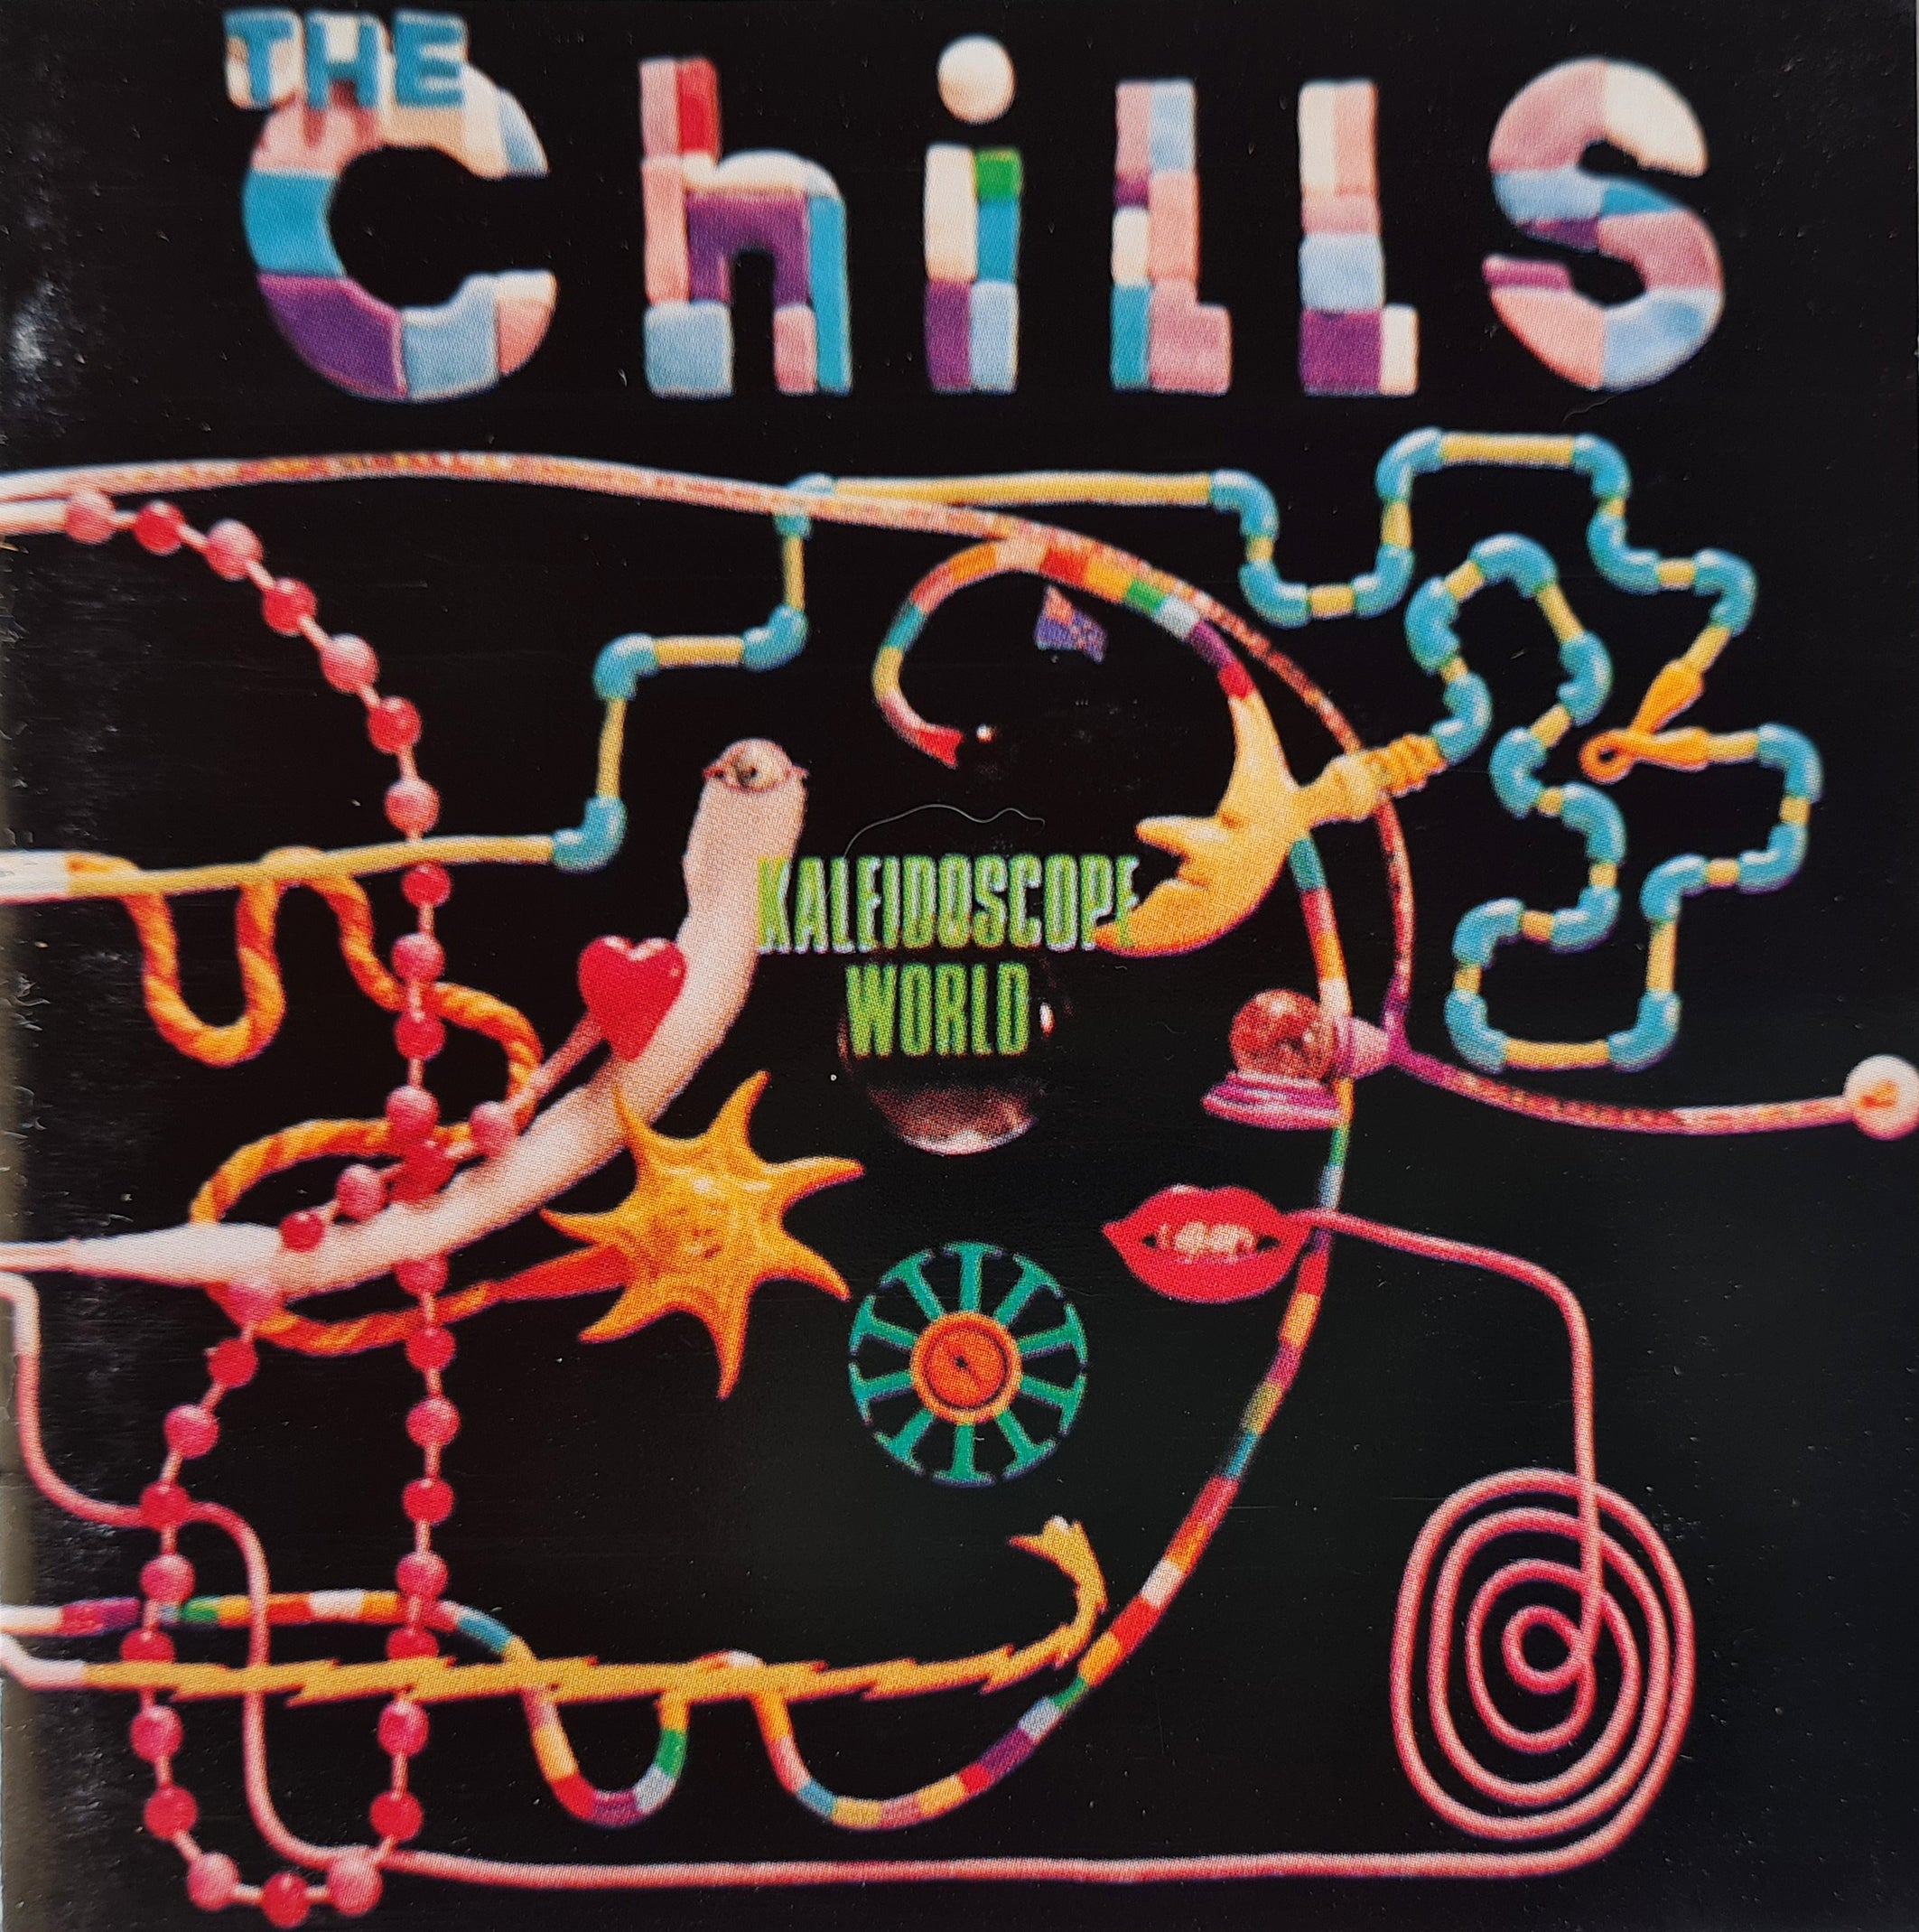 The Chills - Kaleidoscope World (CD)